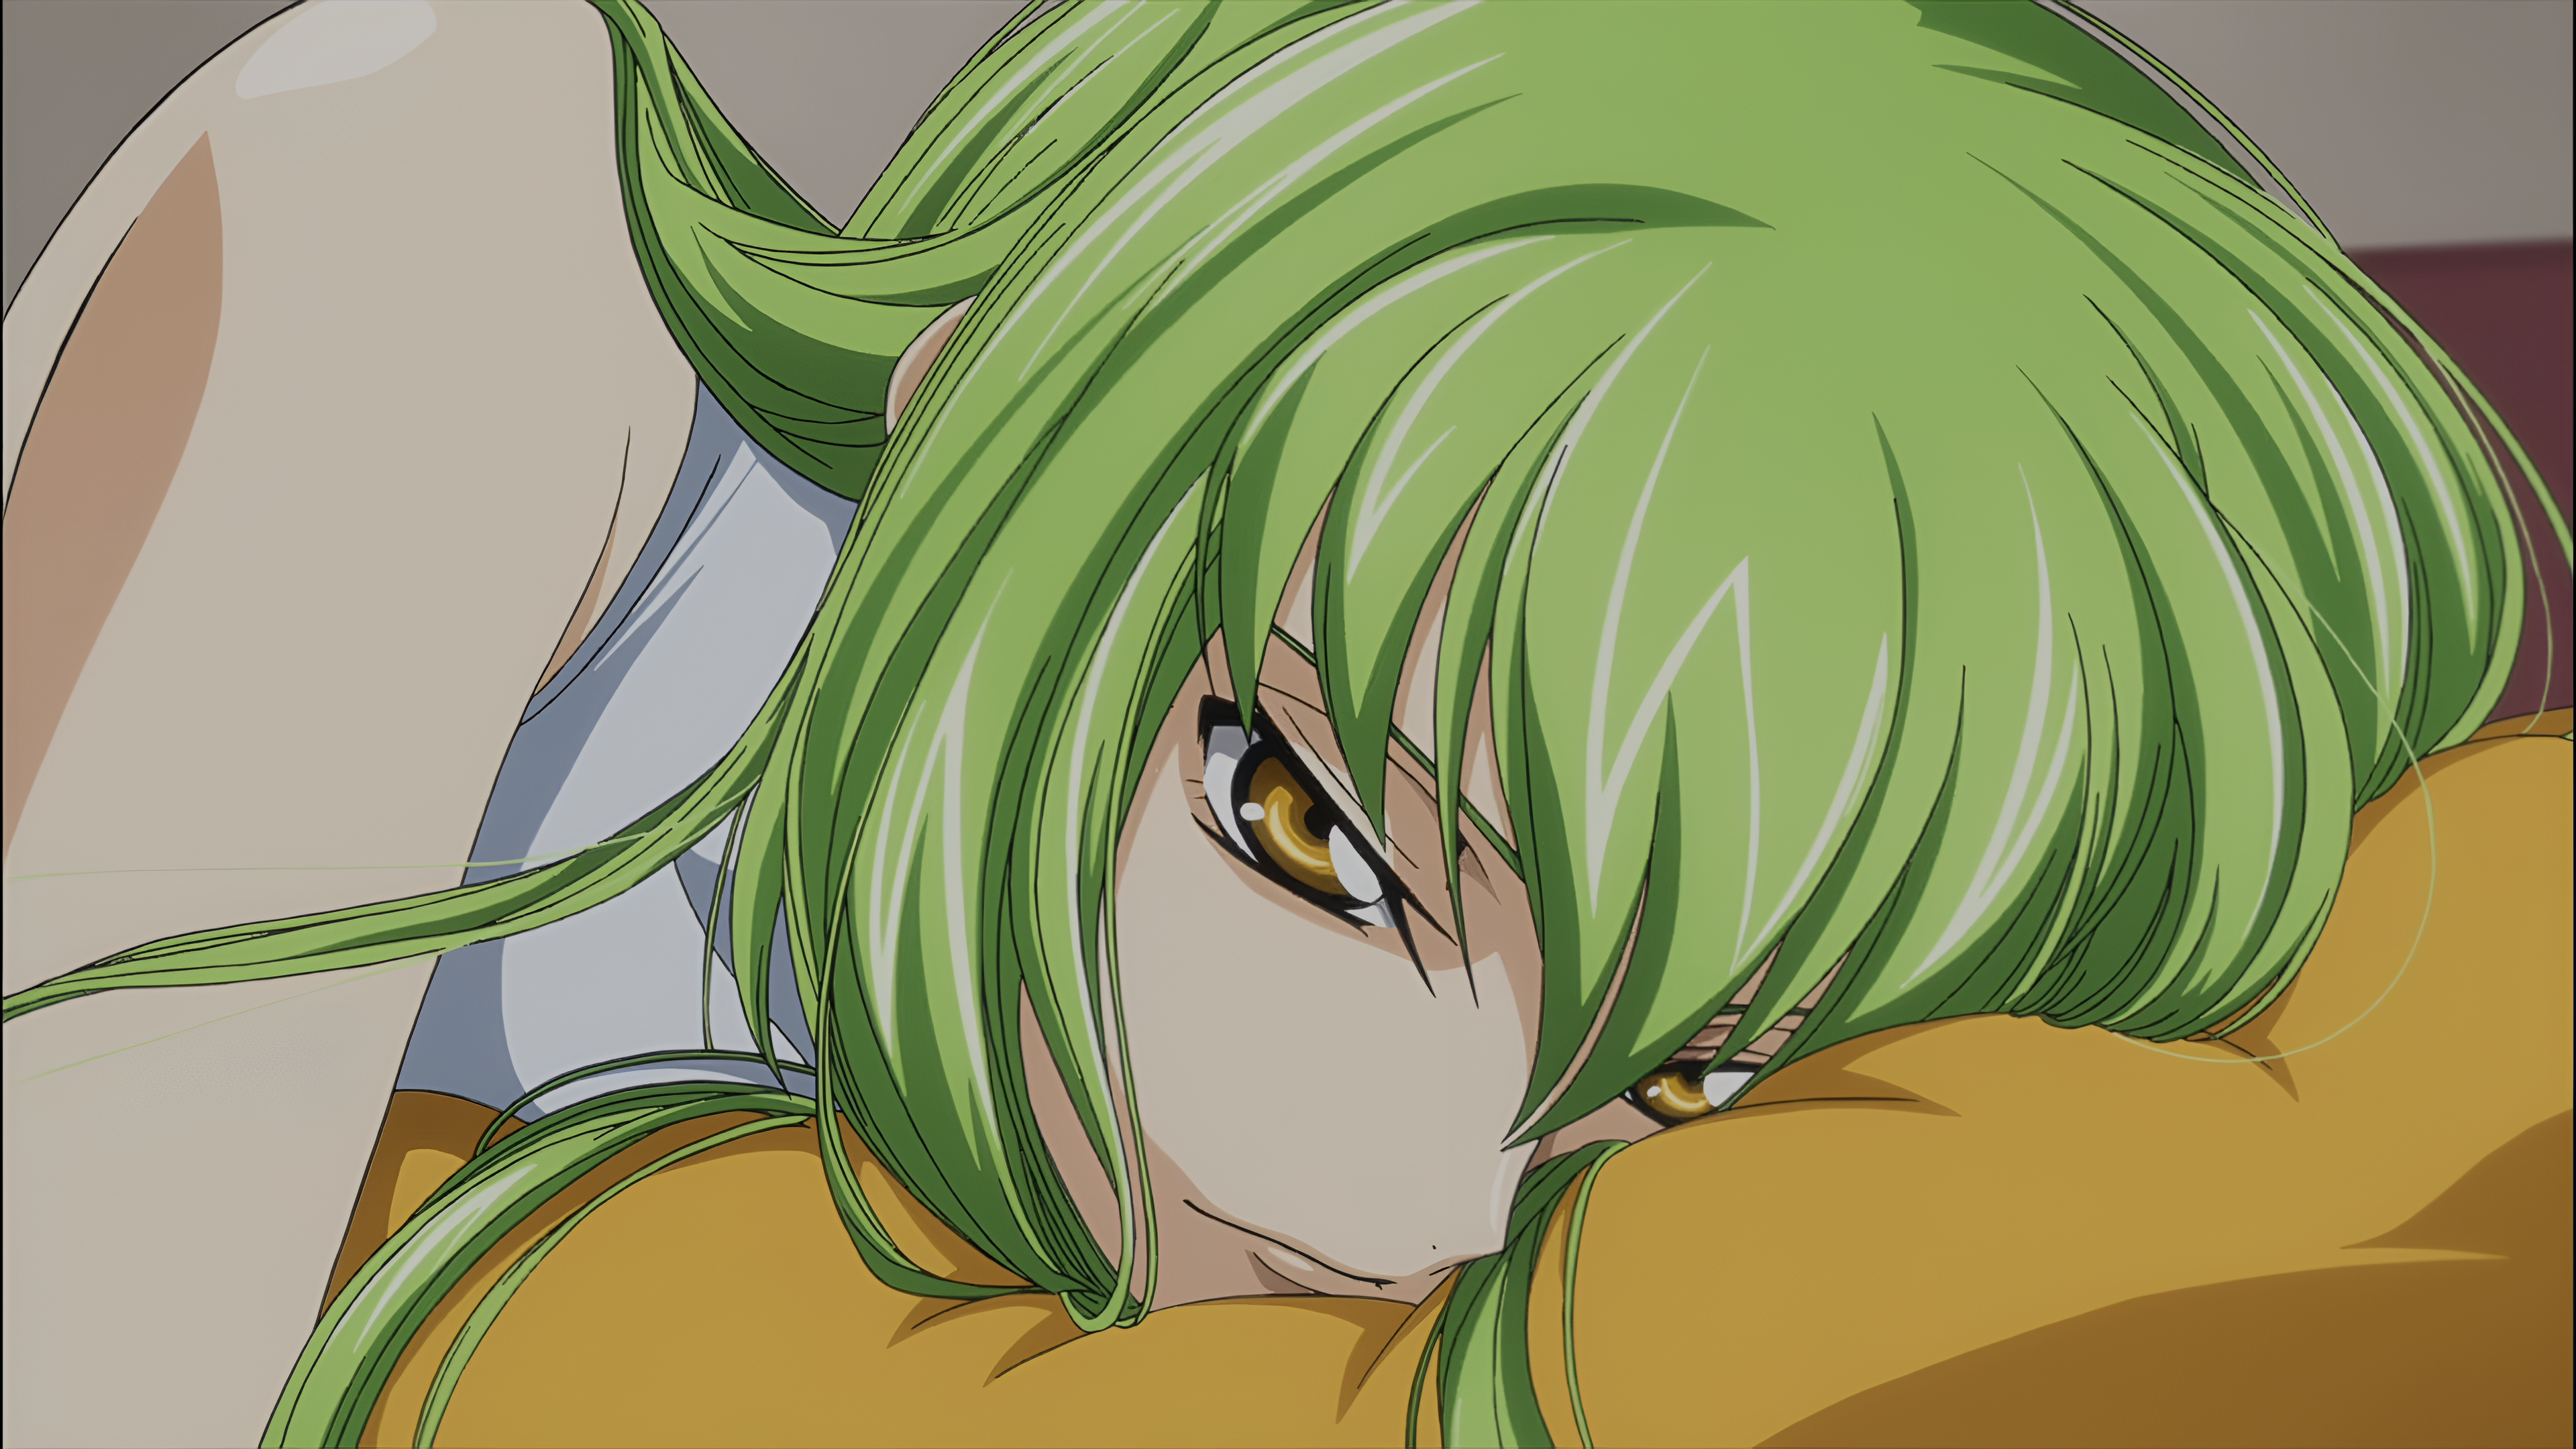 Code Geass C C Code Geass Green Hair Anime Girls Screen Shot 3840x2160